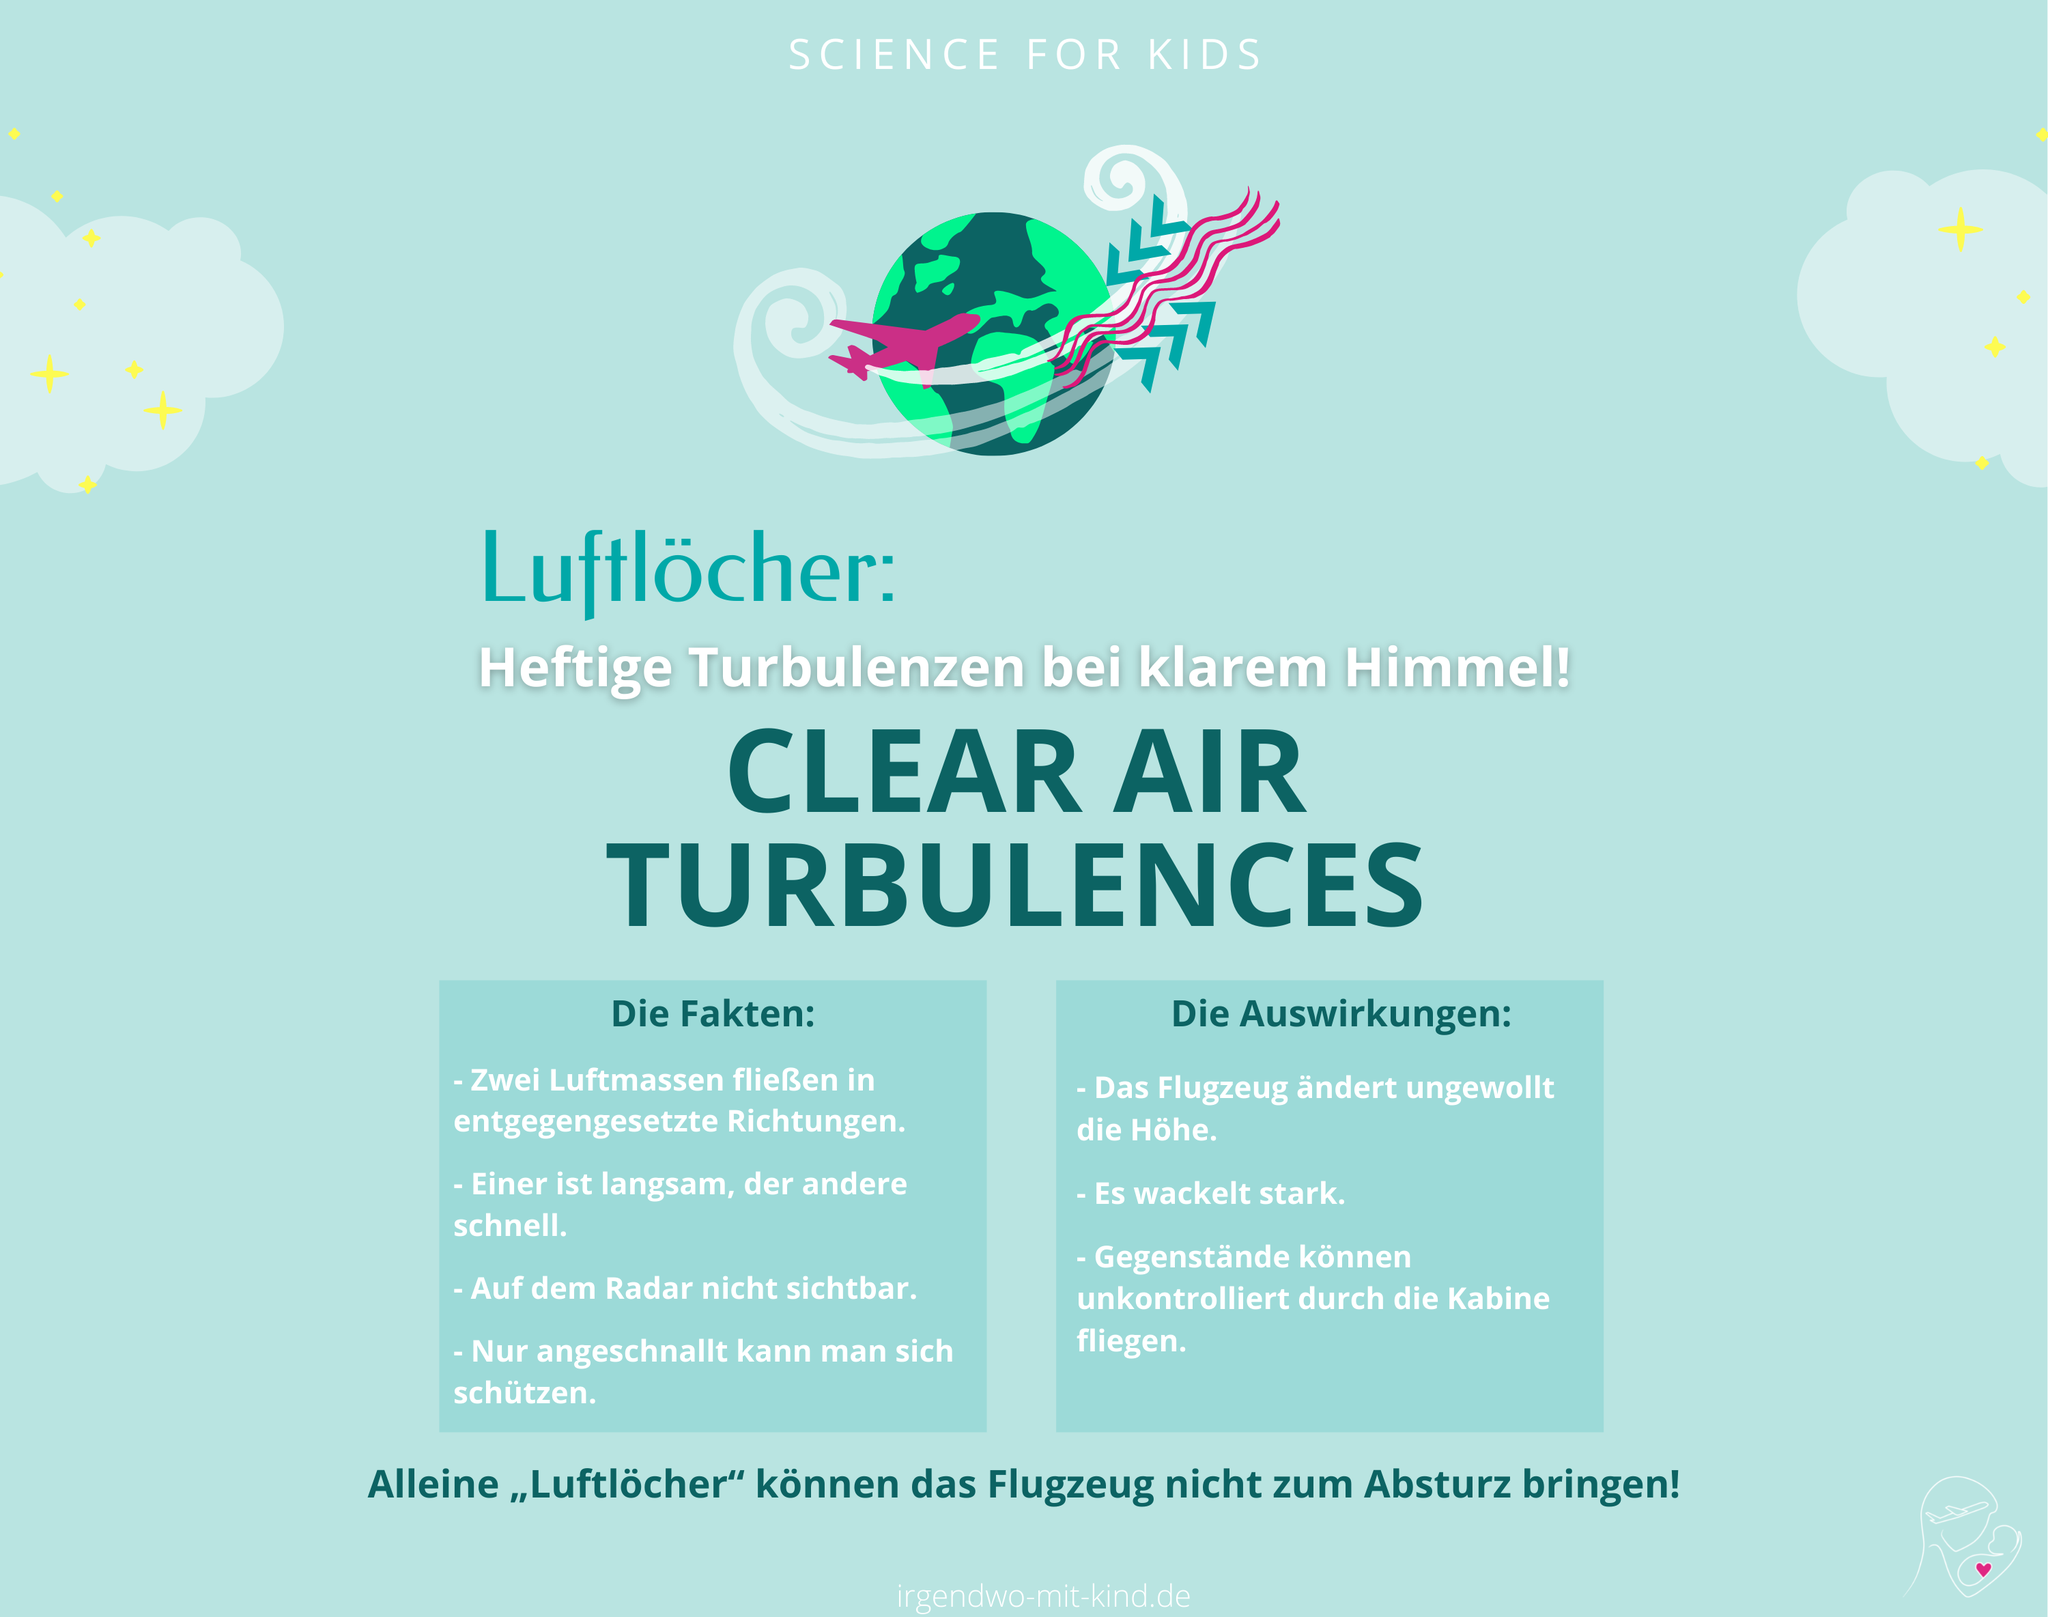 Clear Air Turbulences (Luftloch)